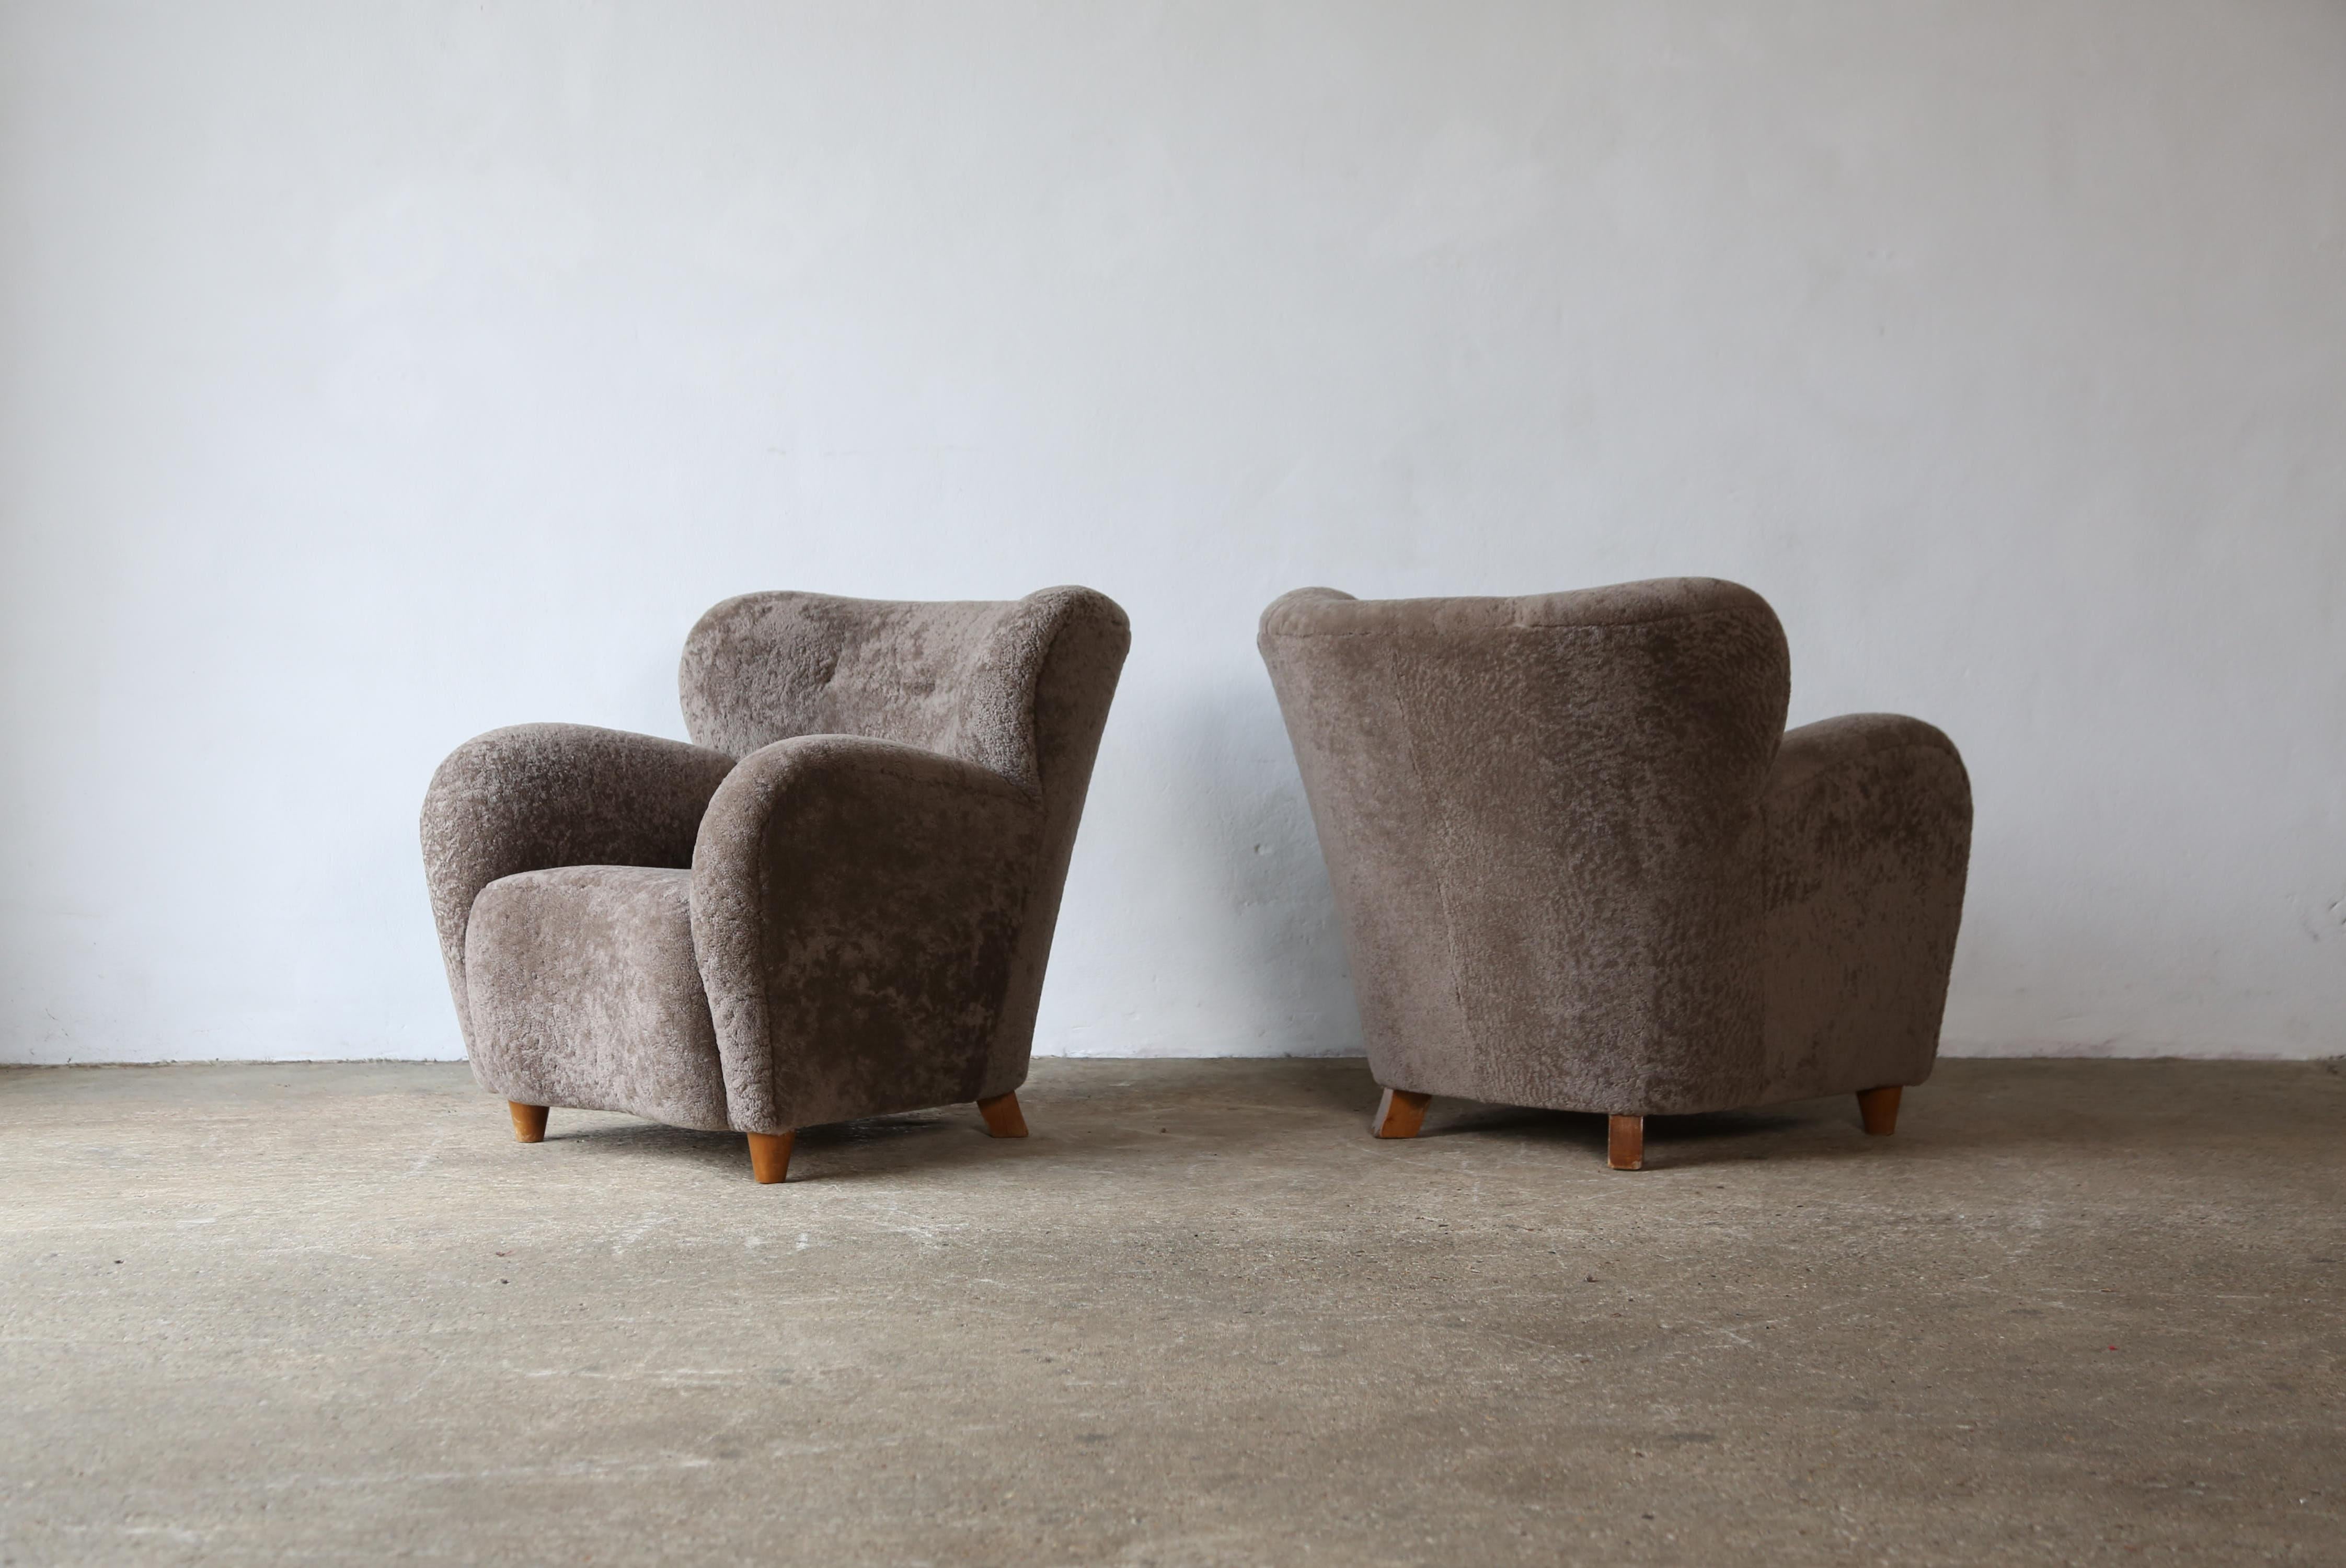 Superbe paire de chaises longues, nouvellement tapissées de peau de mouton grise/brune, Danemark, années 1950.  Expédition rapide dans le monde entier.





.